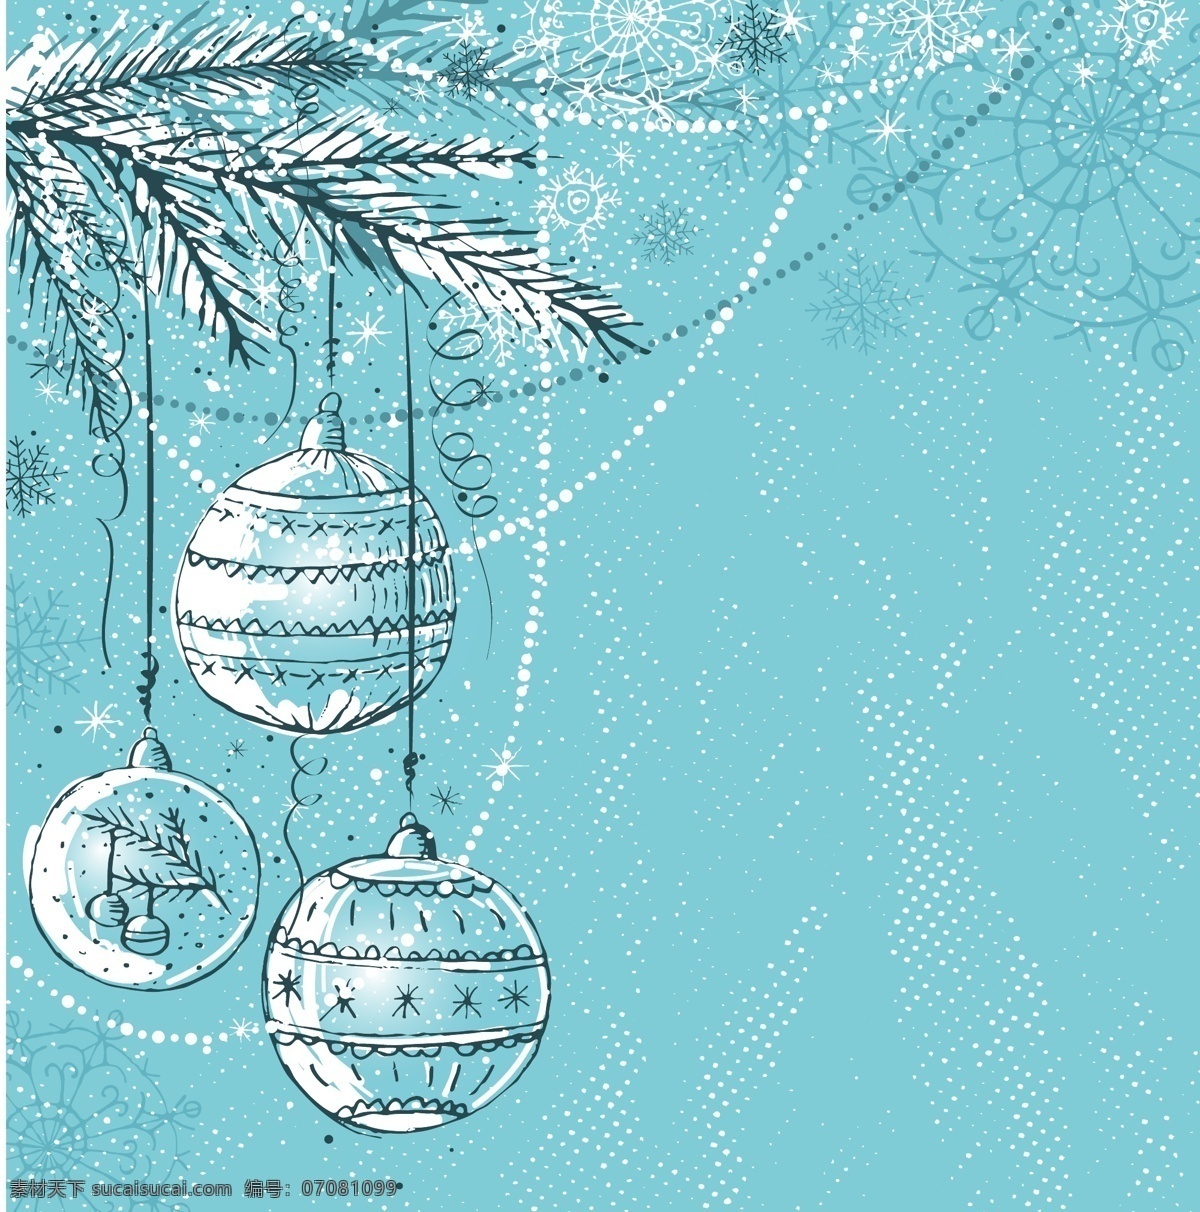 圣诞节 彩球 背景 吊球 花纹 幻彩 精美 模板 设计稿 丝带 松树枝 圆点 雪花 素材元素 源文件 矢量图